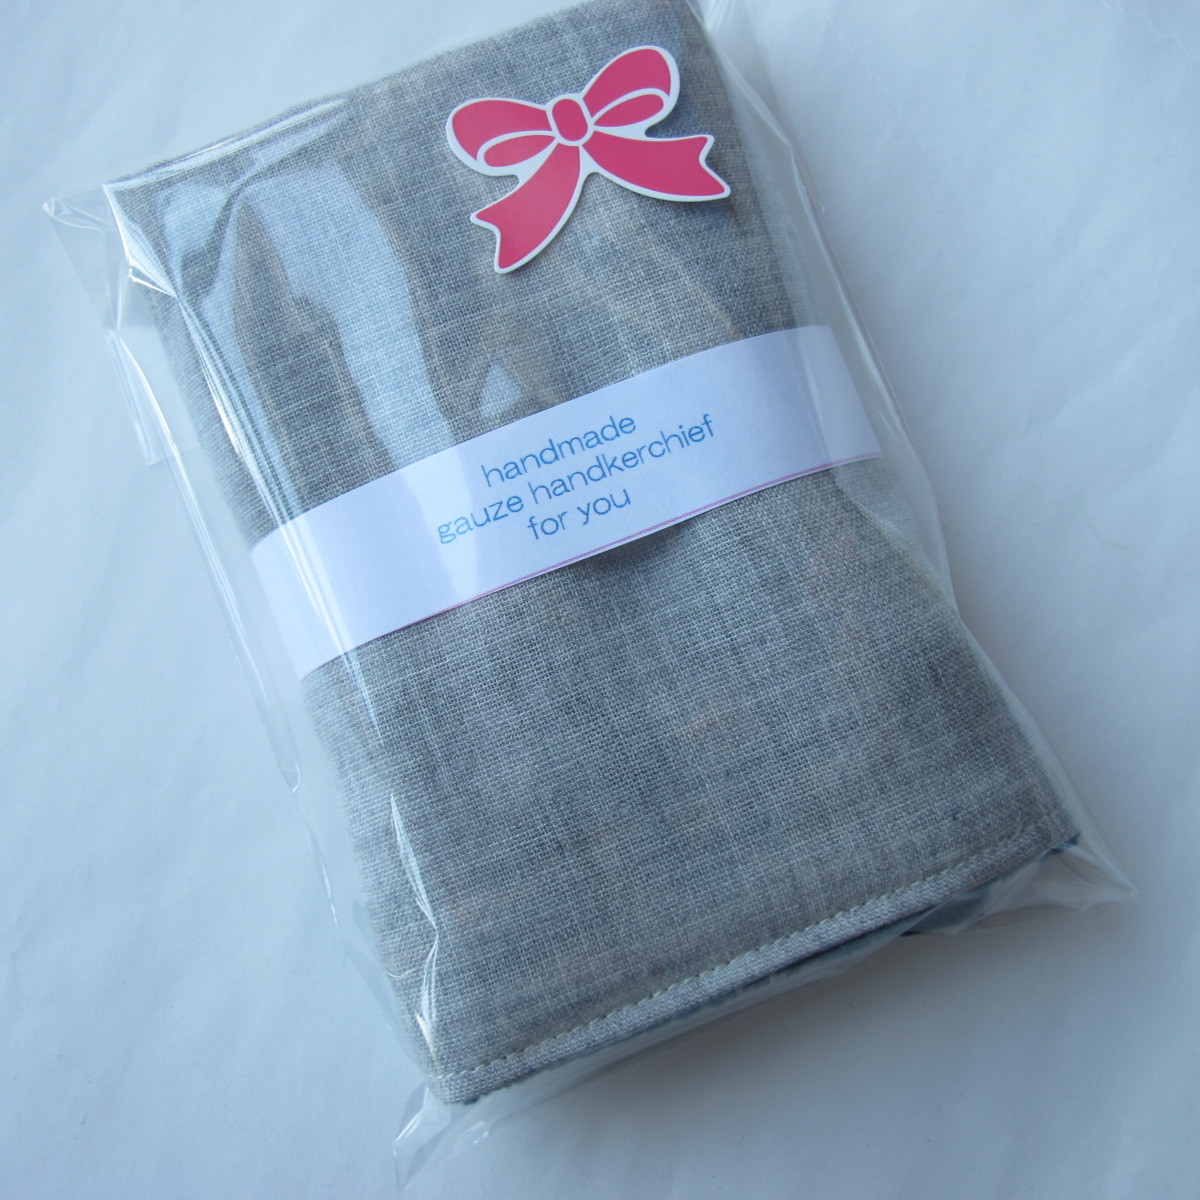 25×25# серый одноцветный ①# двойной марля полотенце # ручная работа #1 листов 